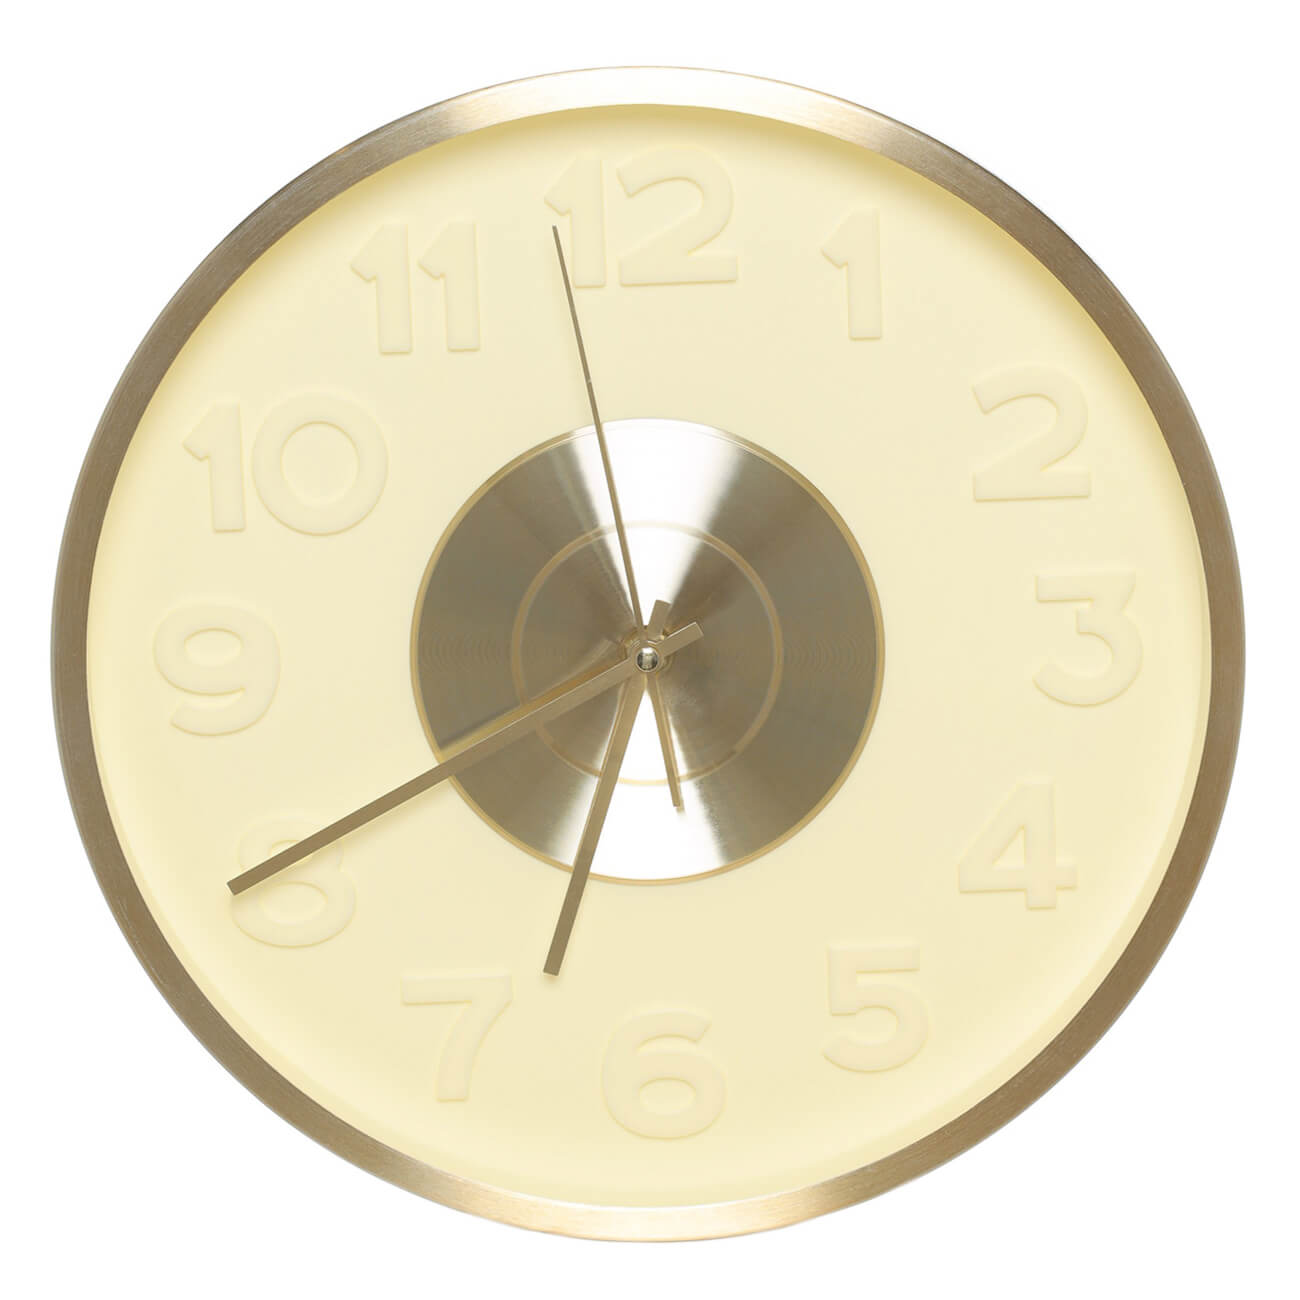 Часы настенные, 30 см, с подсветкой, пластик/стекло, круглые, золотистые, Fantastic gold часы электронные настенные